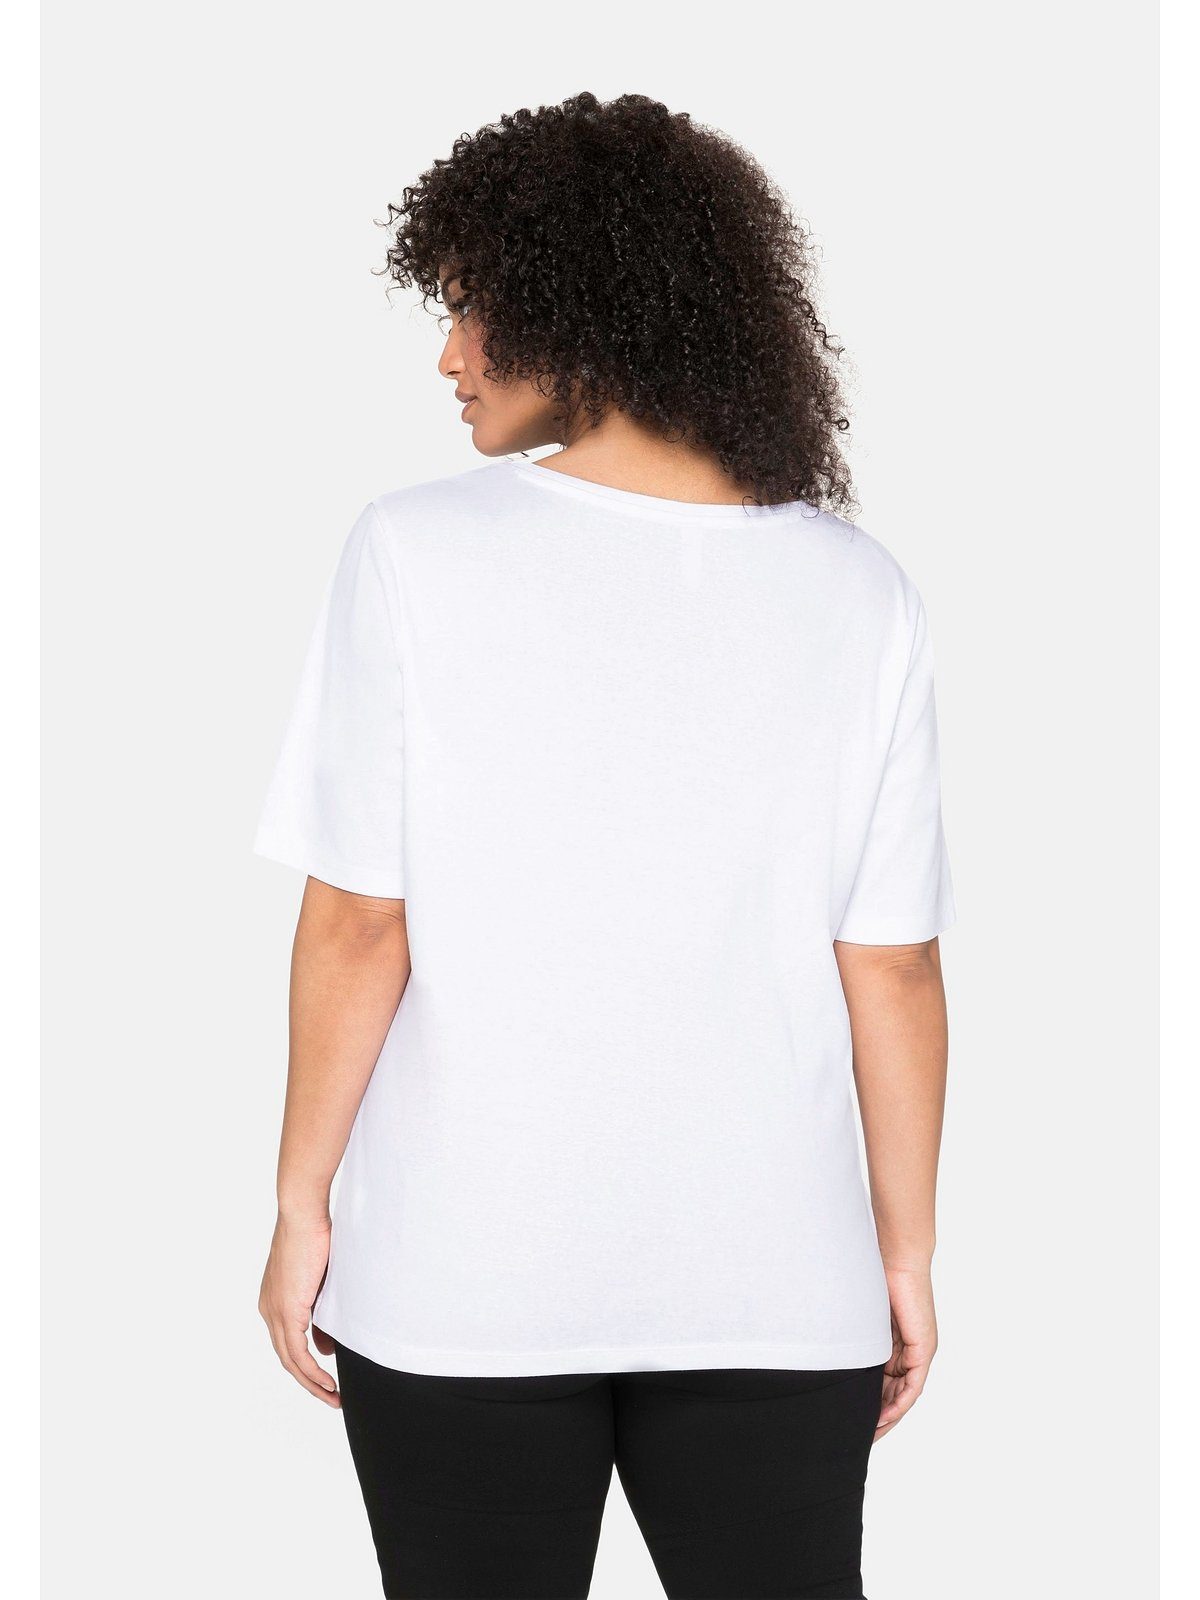 T-Shirt weiß reiner Baumwolle Größen Sheego Große aus